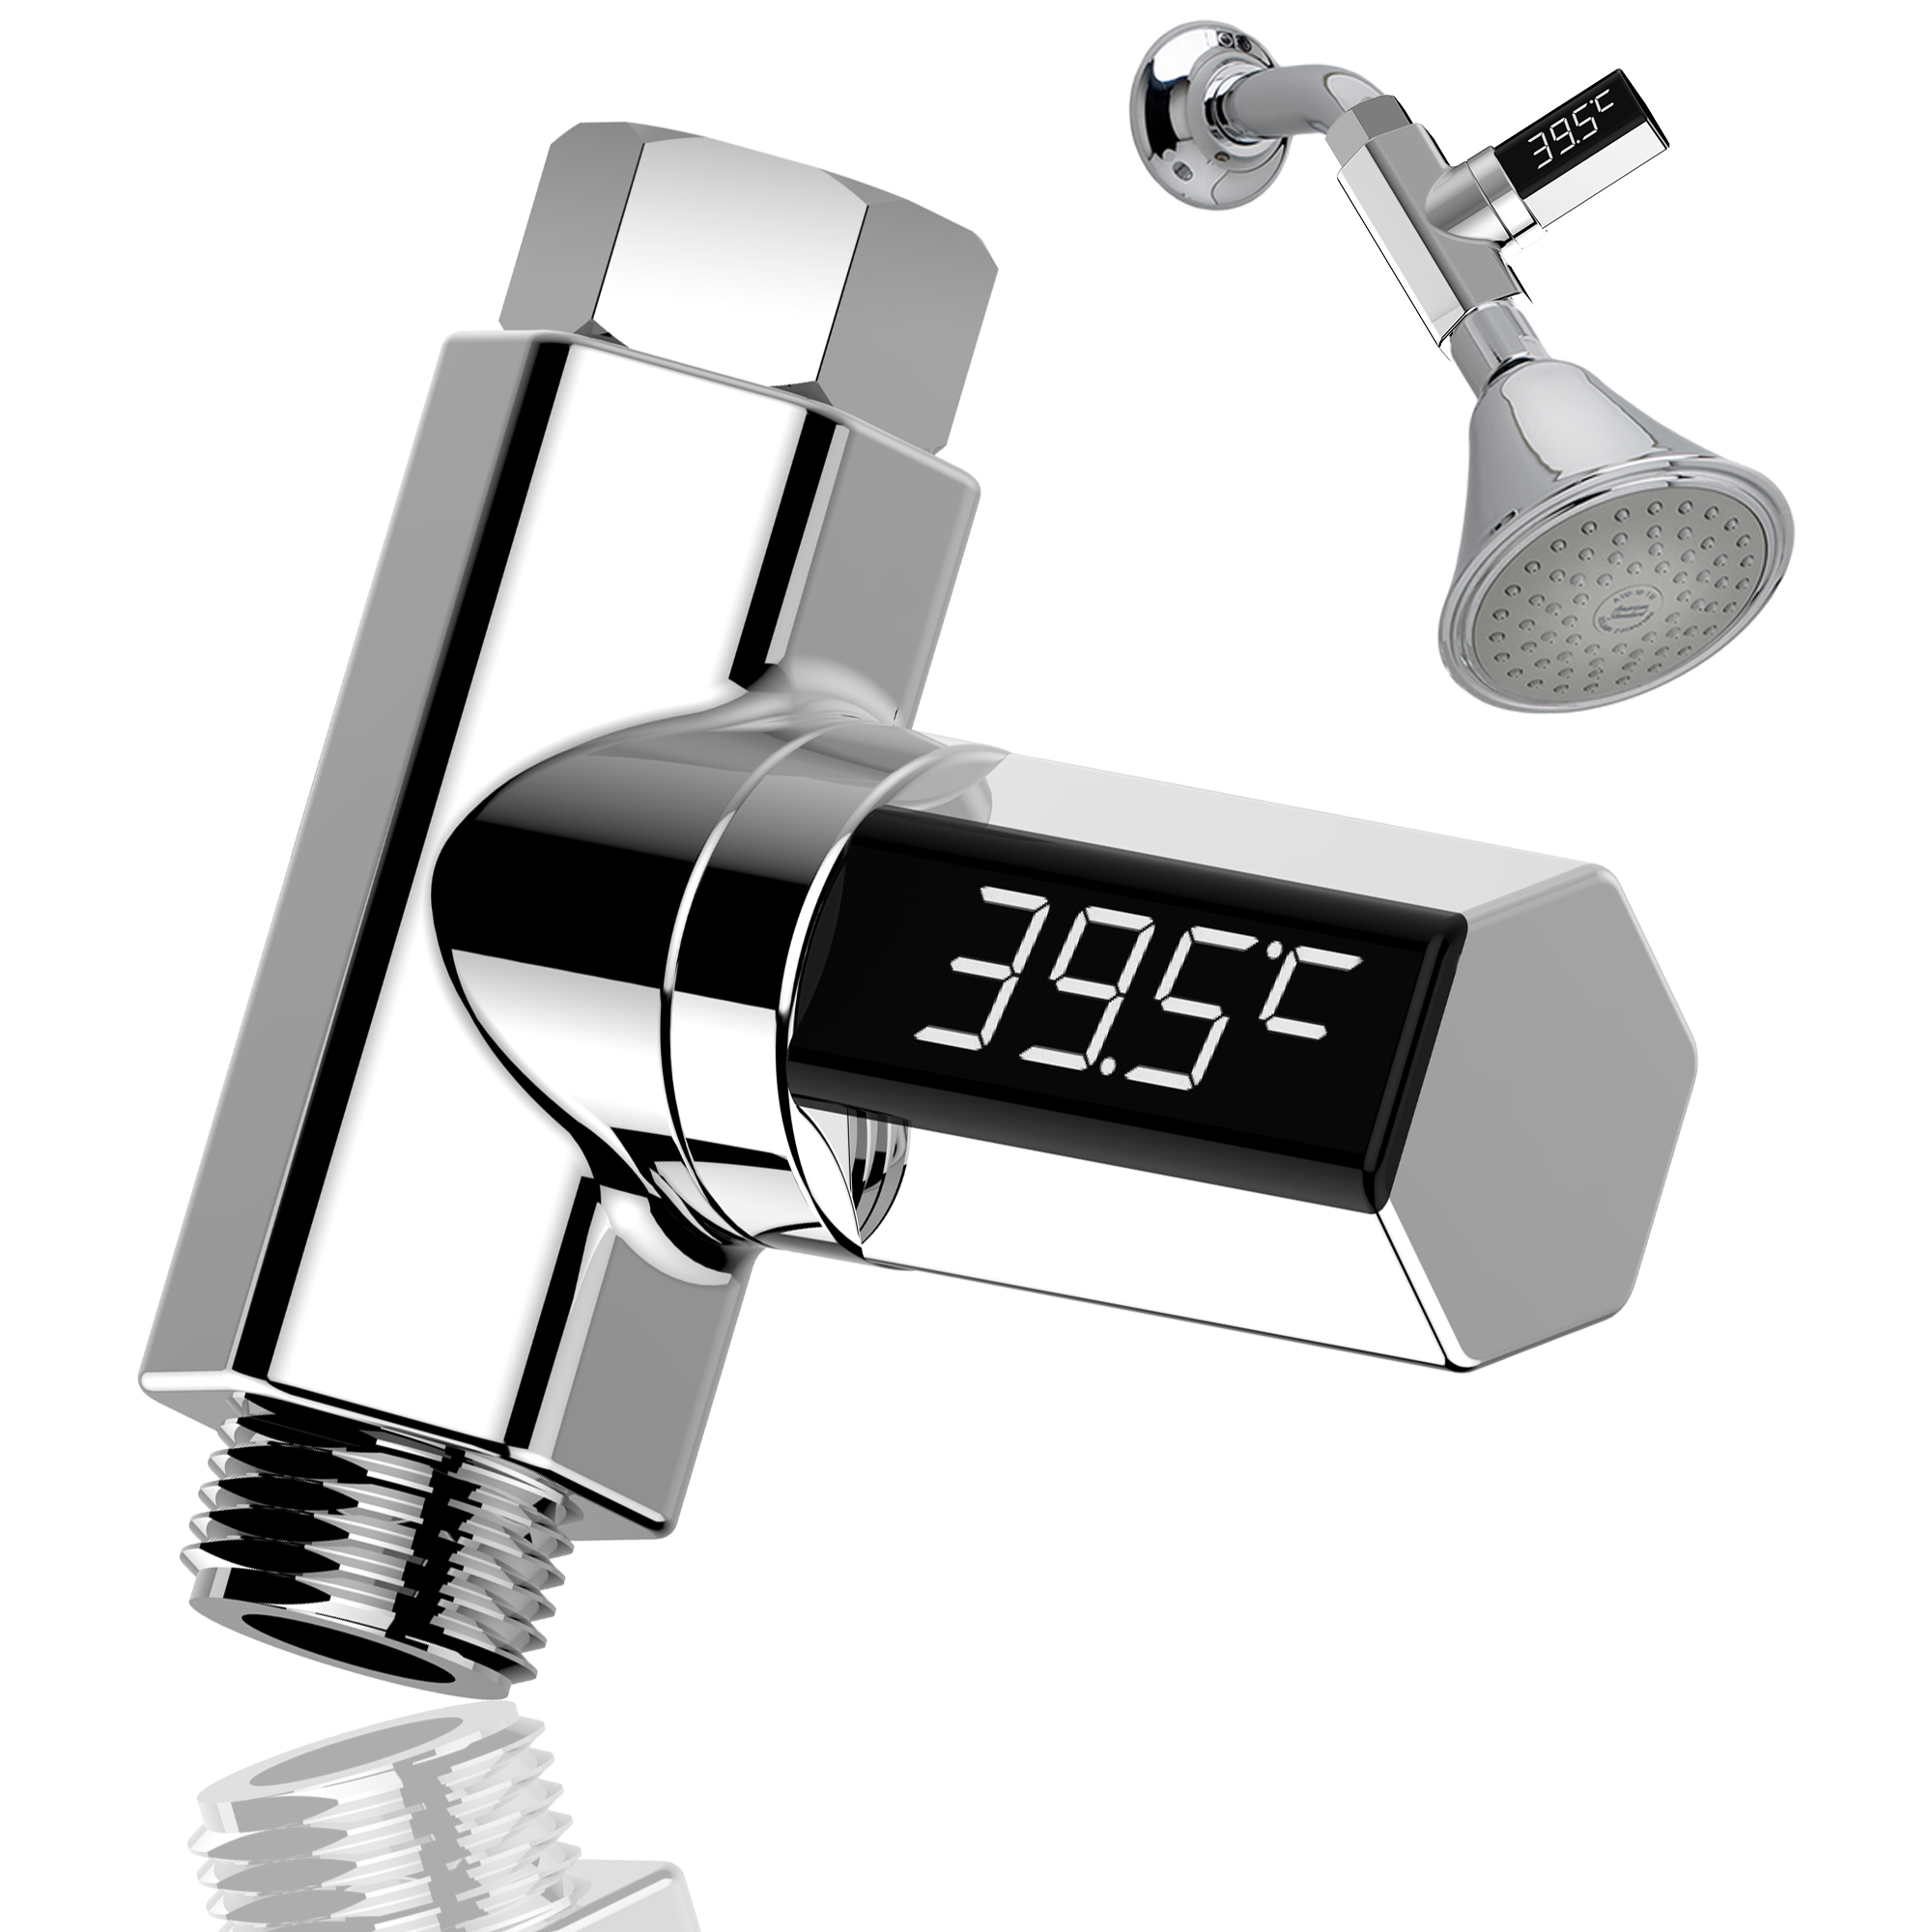 

LW-102 LED Цельсия Дисплей Водяной душ Термометр Цельсий поток Самогенерирующееся электричество Измеритель температуры в